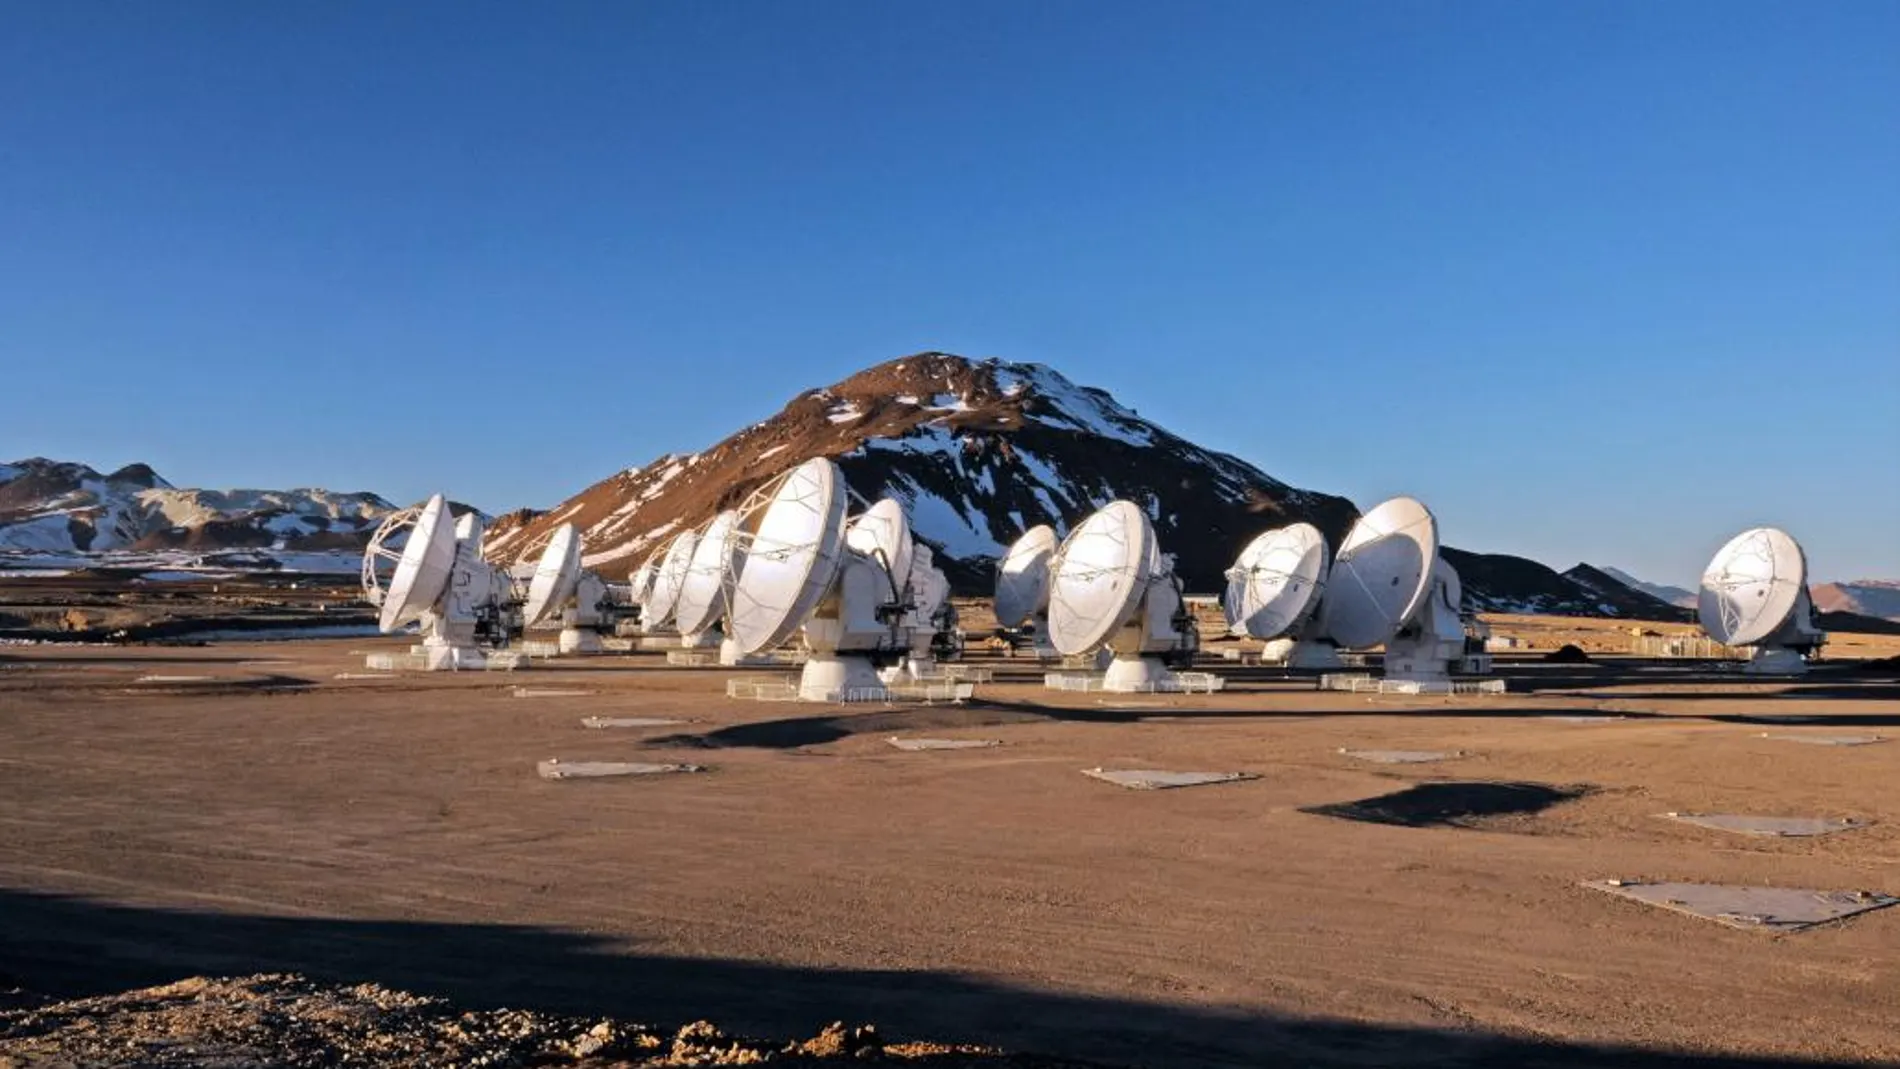 Vista general del complejo de telescopios ALMA